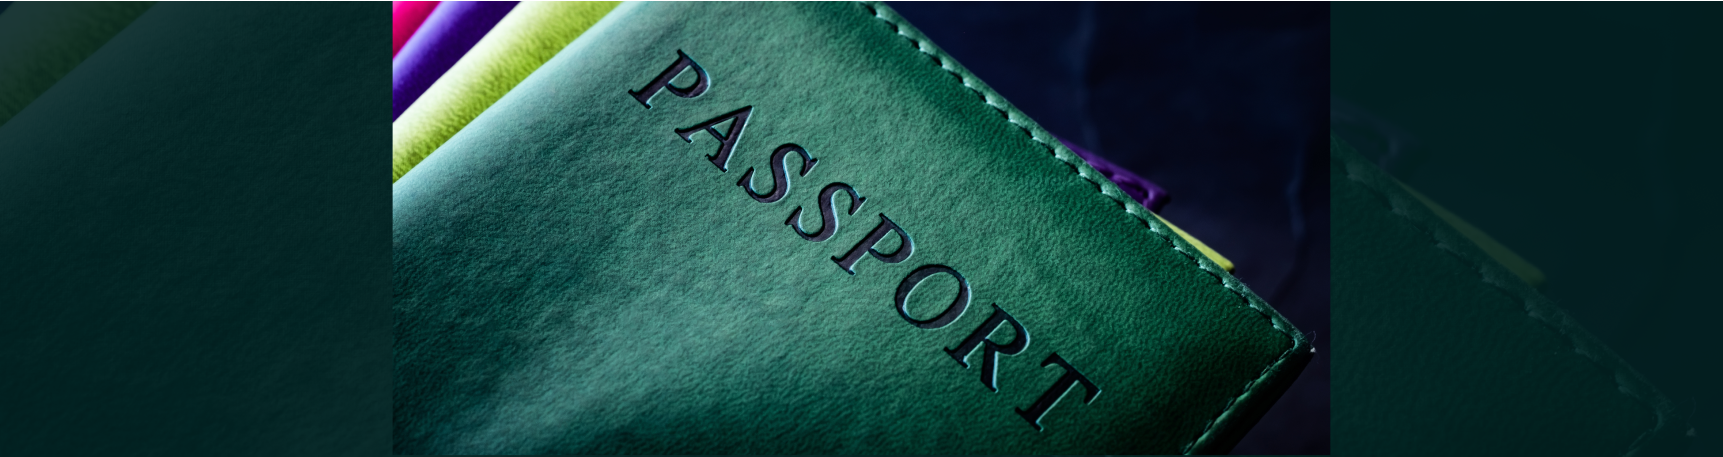 В некоторых банках для открытия счета достаточно предьявить паспорт